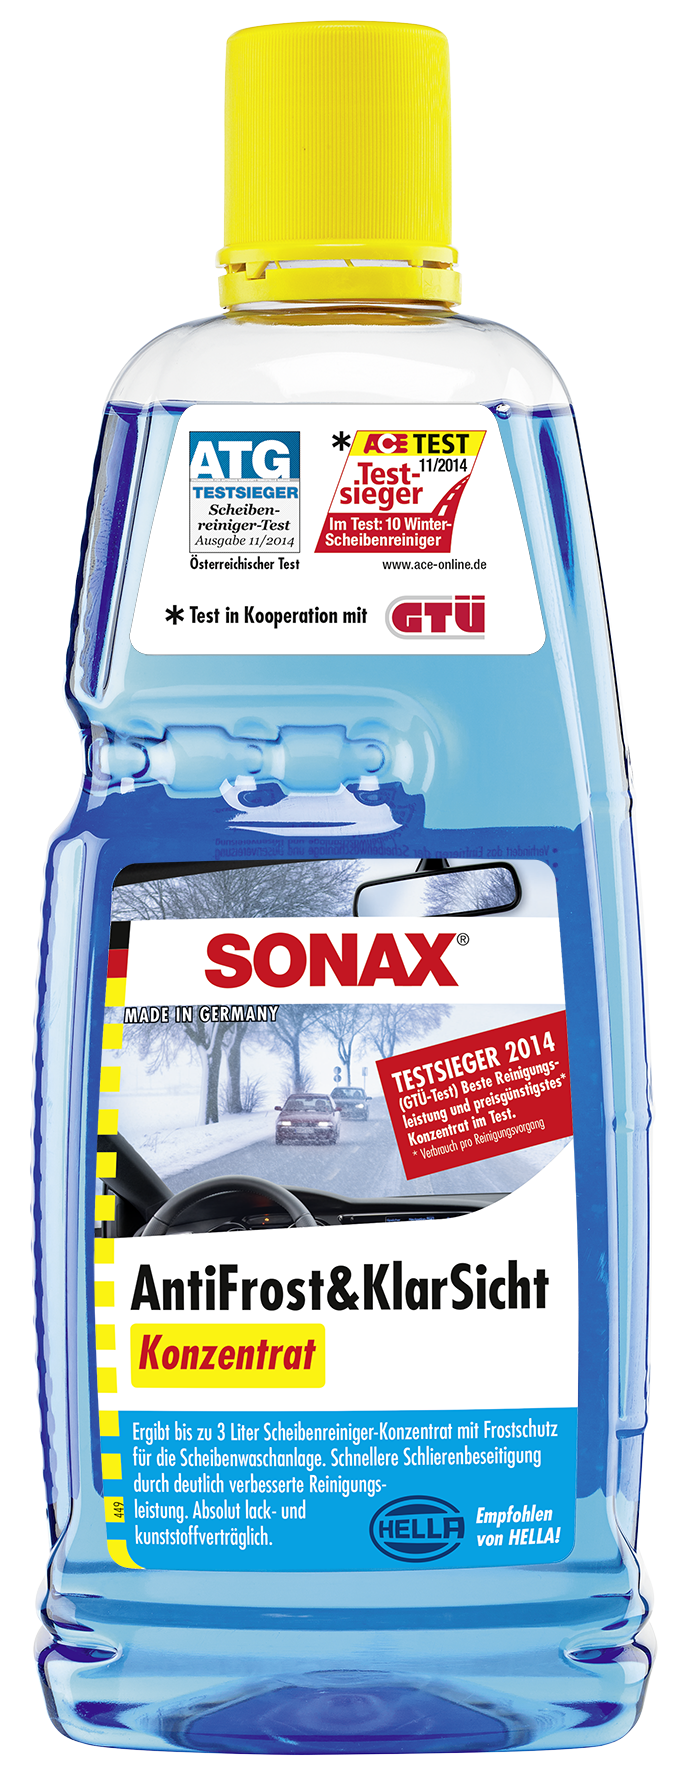 SONAX Antifrost & Klarsicht Konzentrat Frostschutz Citrusduft 250 Ml  03321000 4X : : Auto & Motorrad